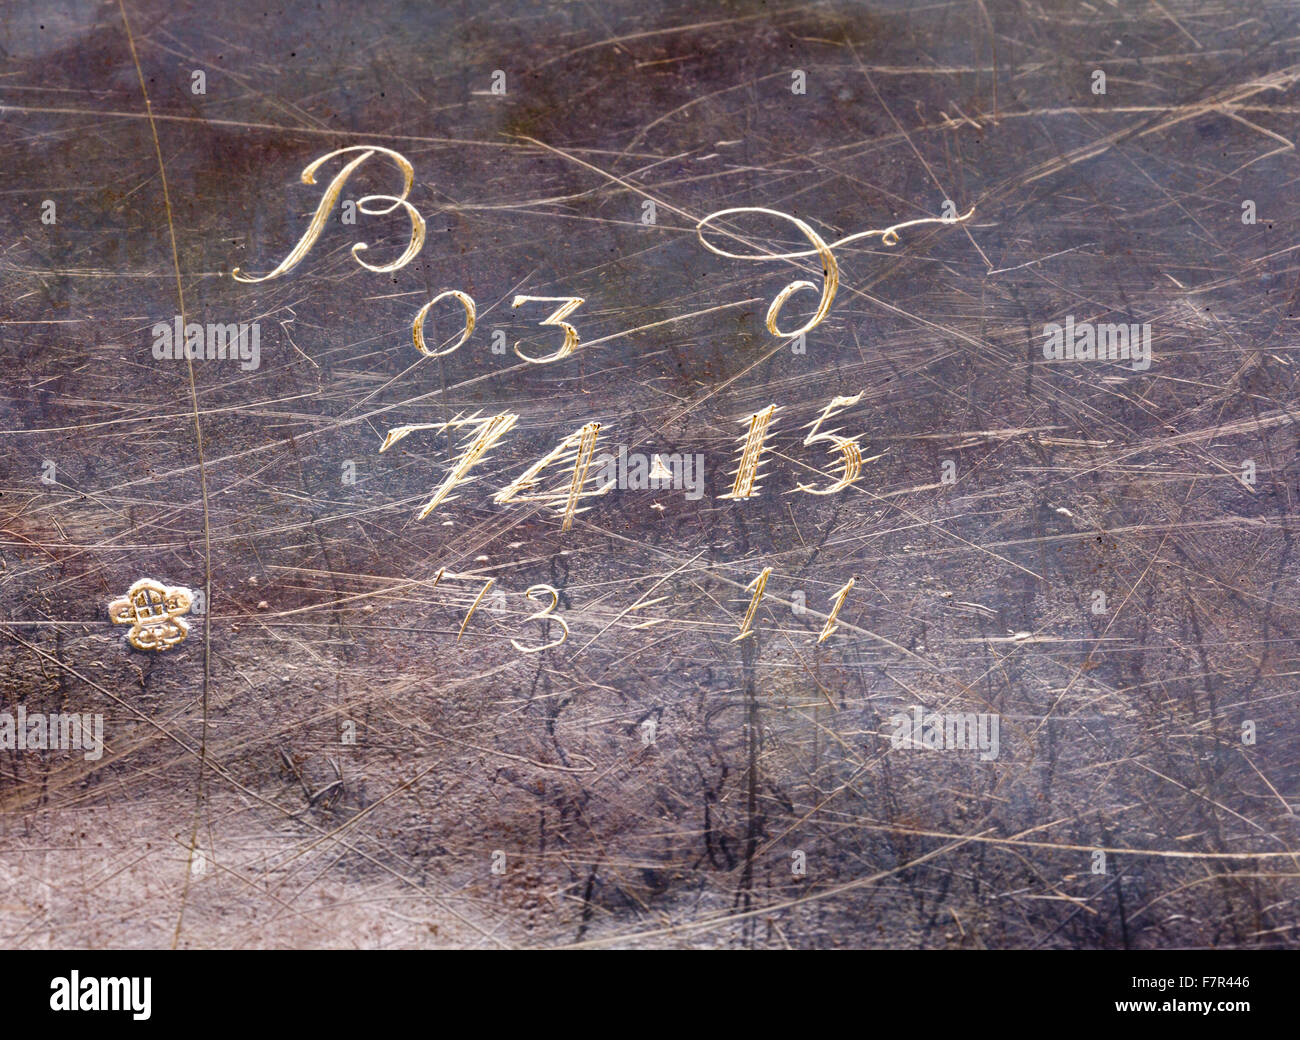 Soupière ovale pour stand, ch. 1755, Turin, de l'argent à Bürchen, dans le Suffolk. Numéro d'Inventaire National Trust. 852080.5-6 Détail de l'scratchweights et hallmark sur marche arrière. Banque D'Images